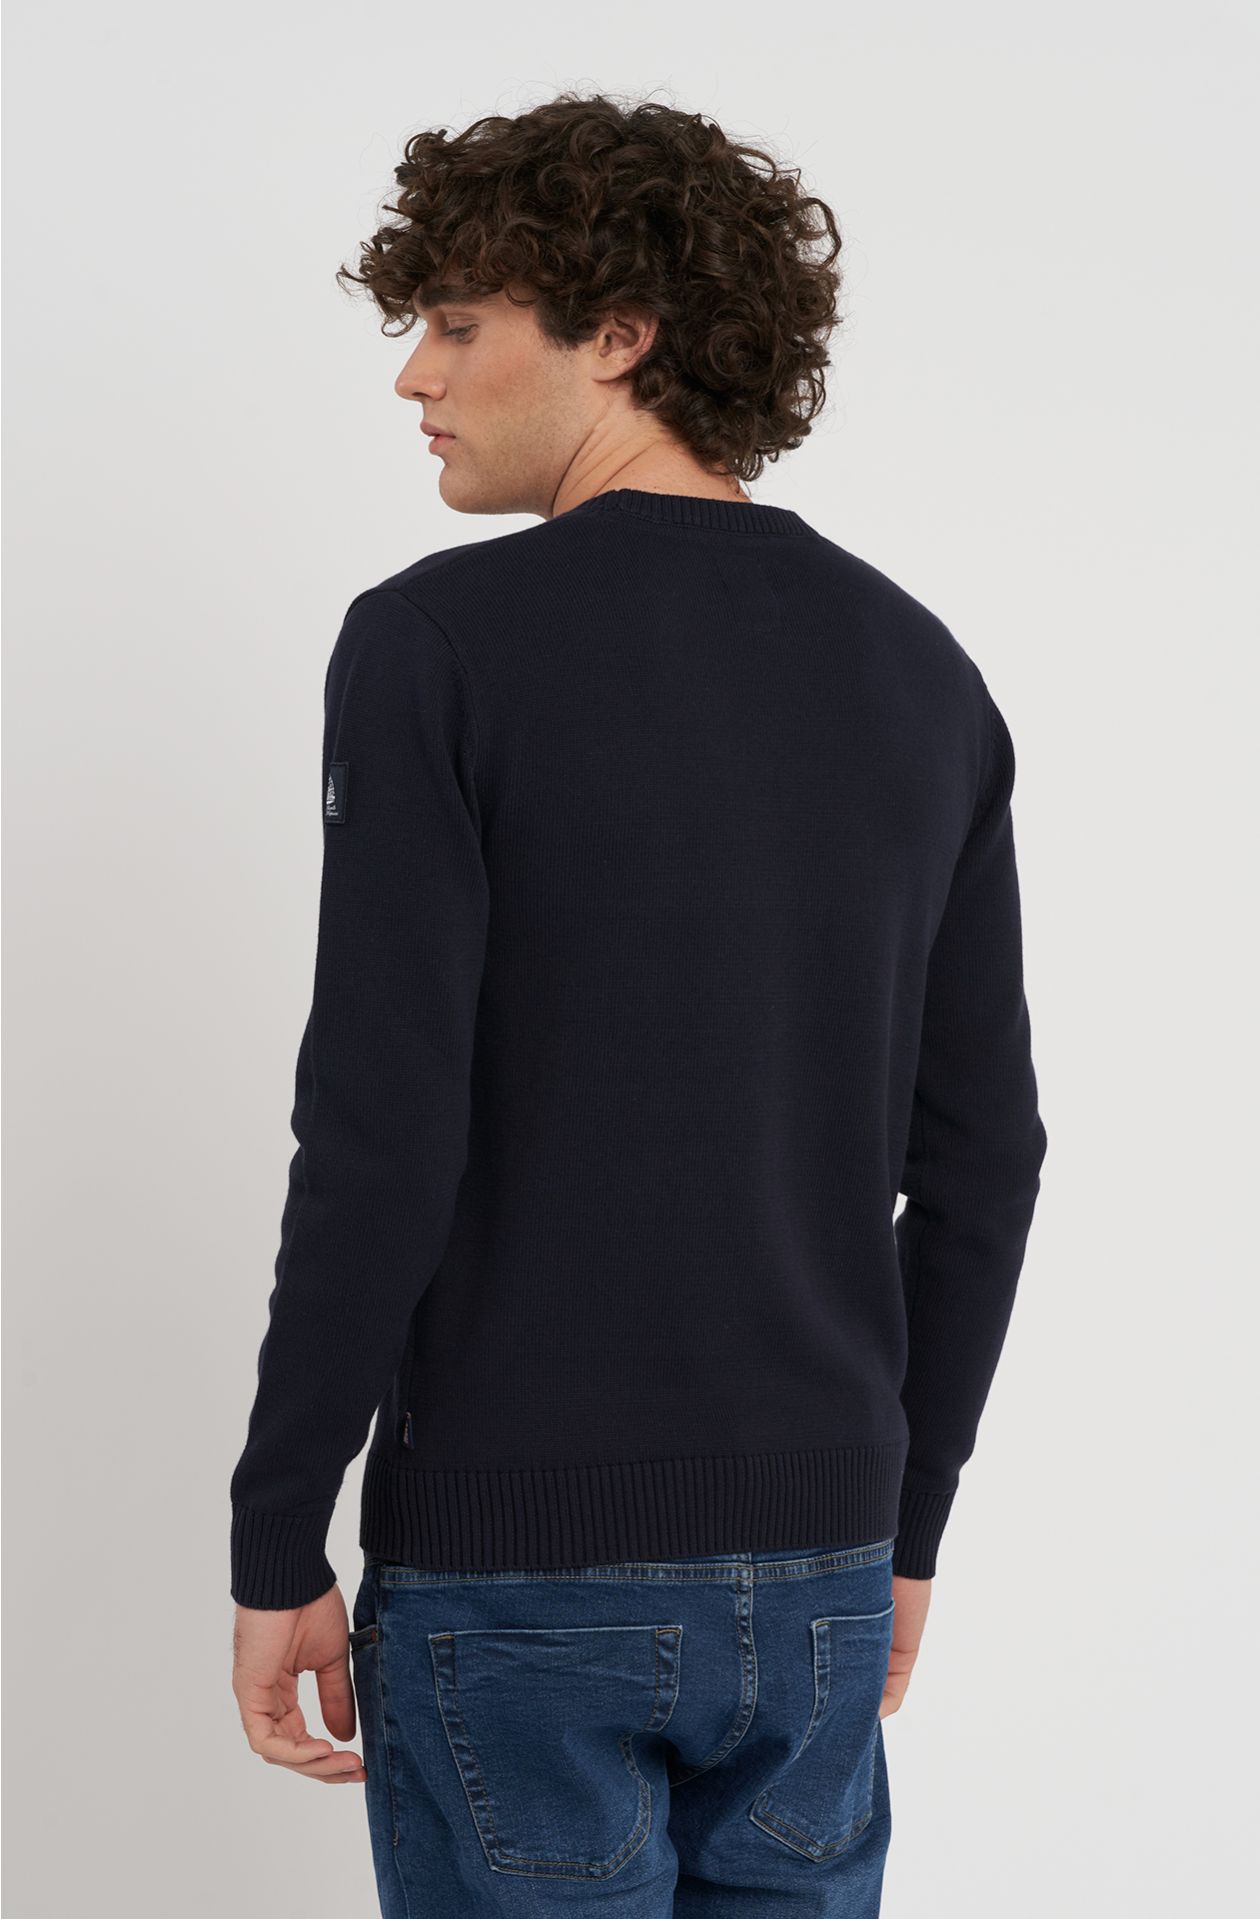 Amerigo Vespucci cotton sweater